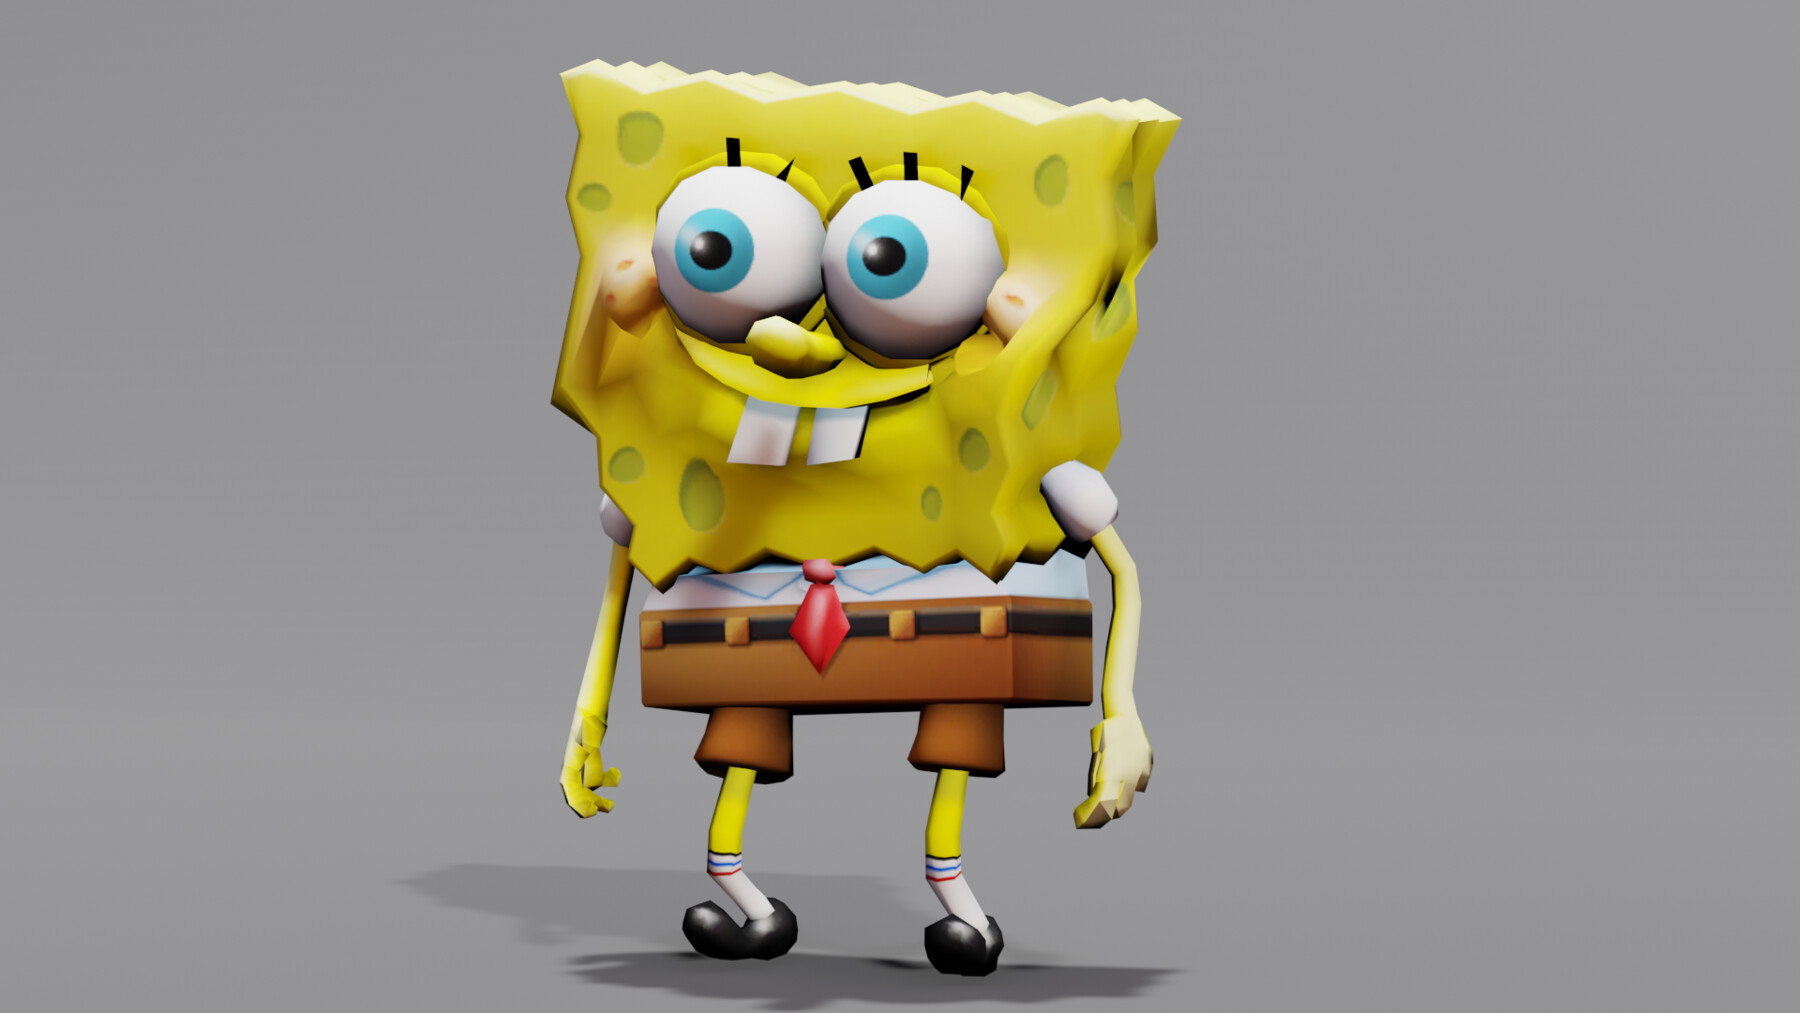 ArtStation - Dancing Spongebob 3D model | Game Assets